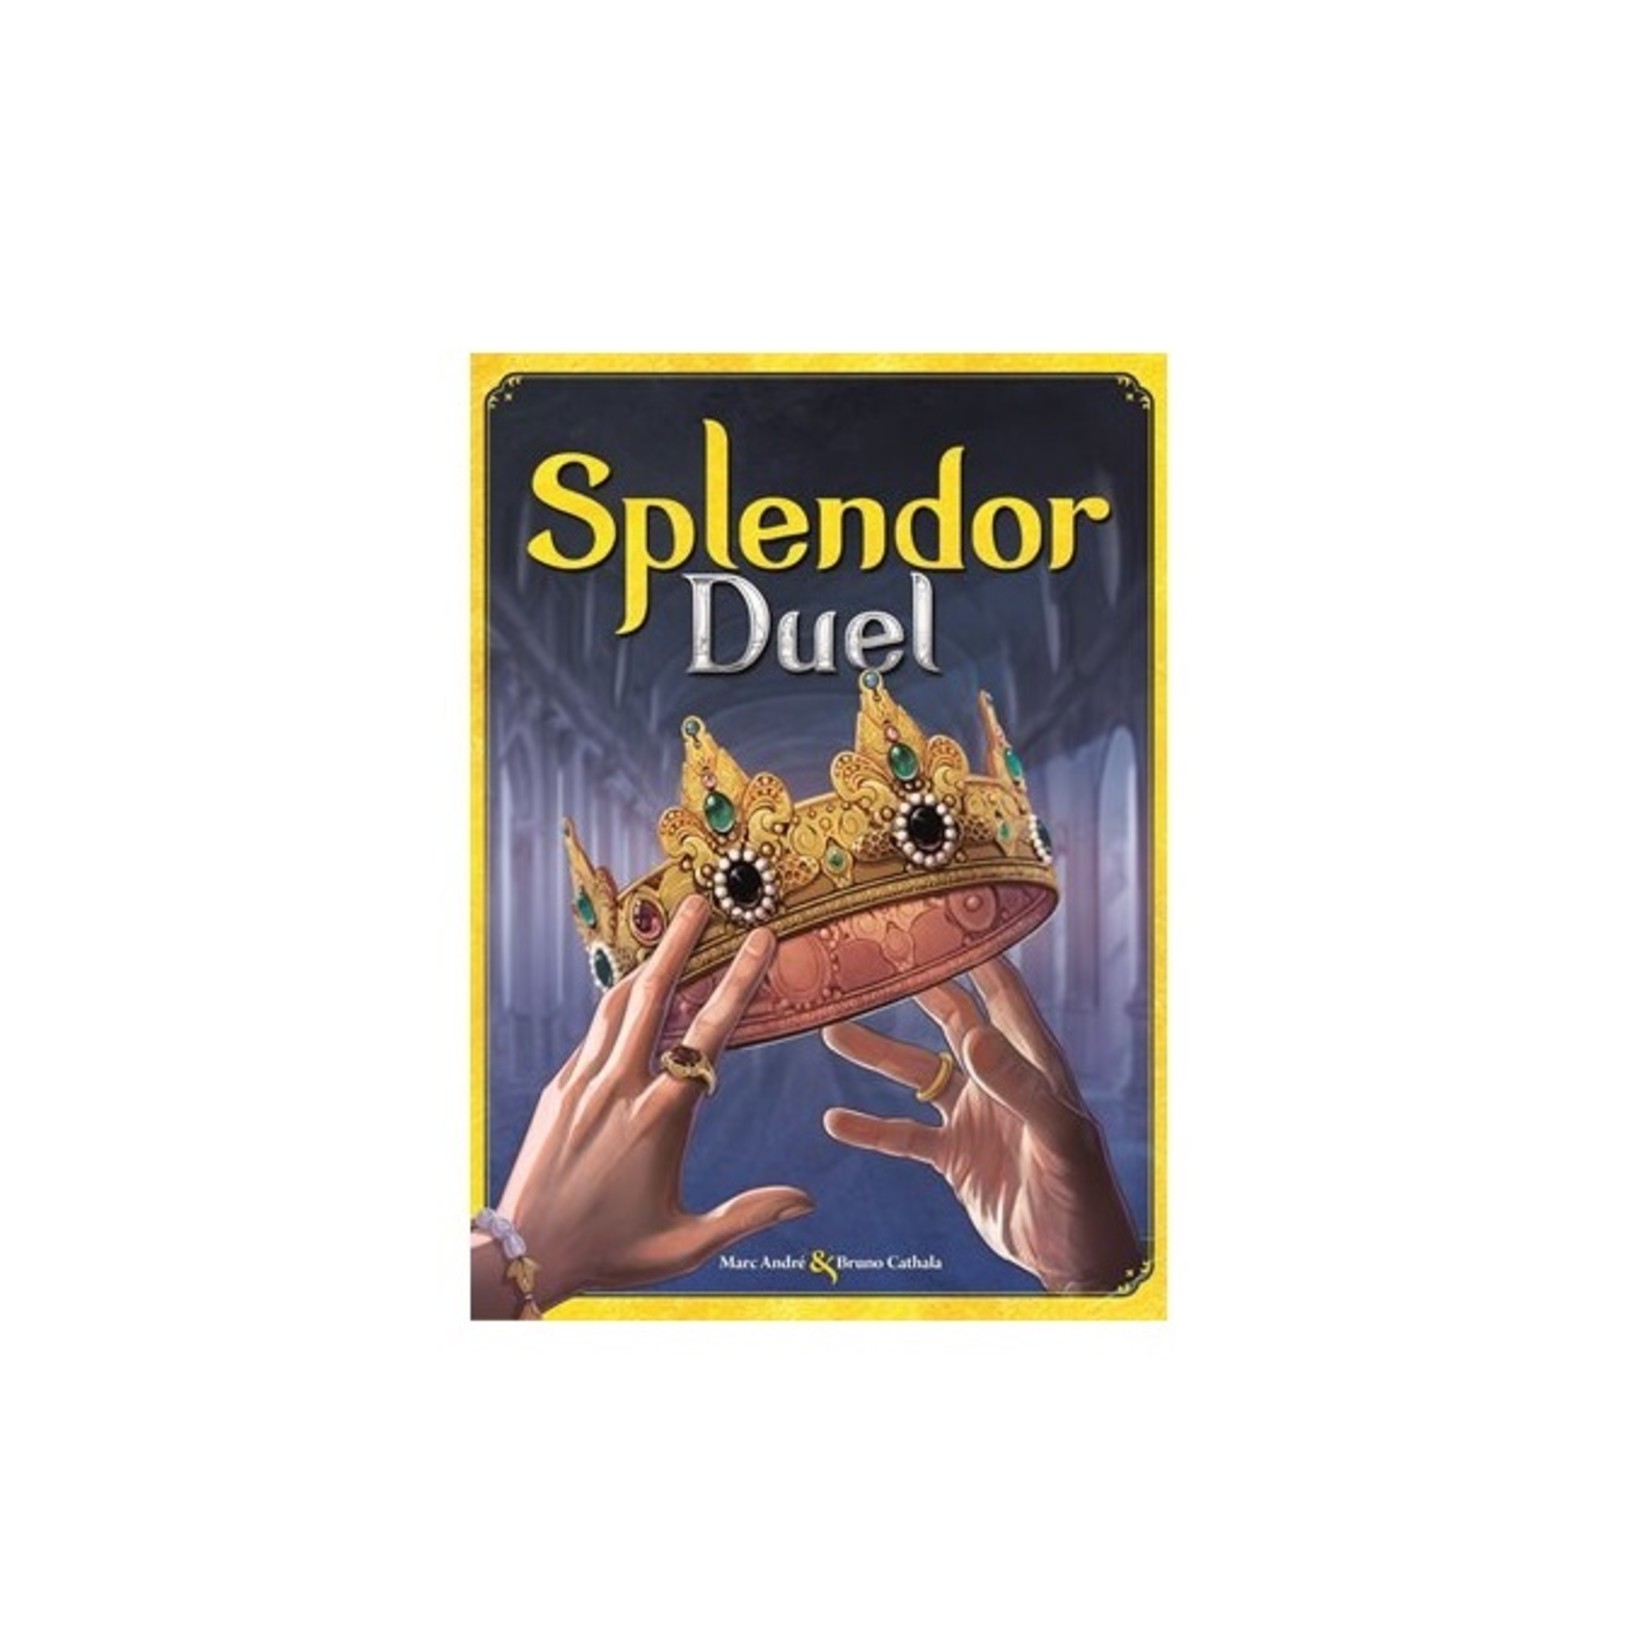 Splendor - Duel (Multilingue) - L'armoire à Jeux Inc.